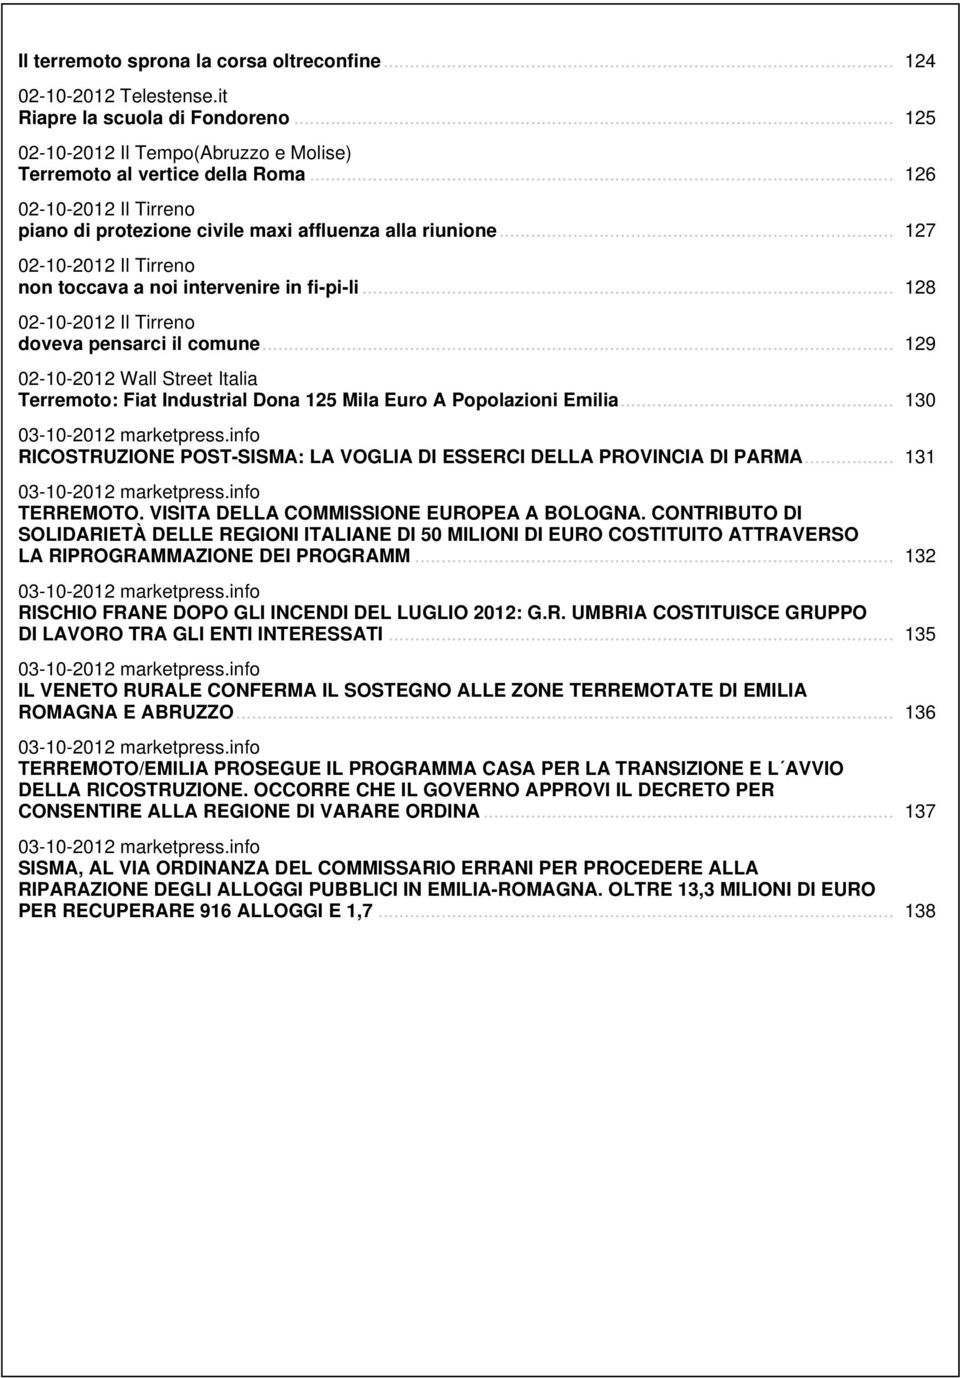 .. 128 02-10-2012 Il Tirreno doveva pensarci il comune... 129 02-10-2012 Wall Street Italia Terremoto: Fiat Industrial Dona 125 Mila Euro A Popolazioni Emilia... 130 03-10-2012 marketpress.